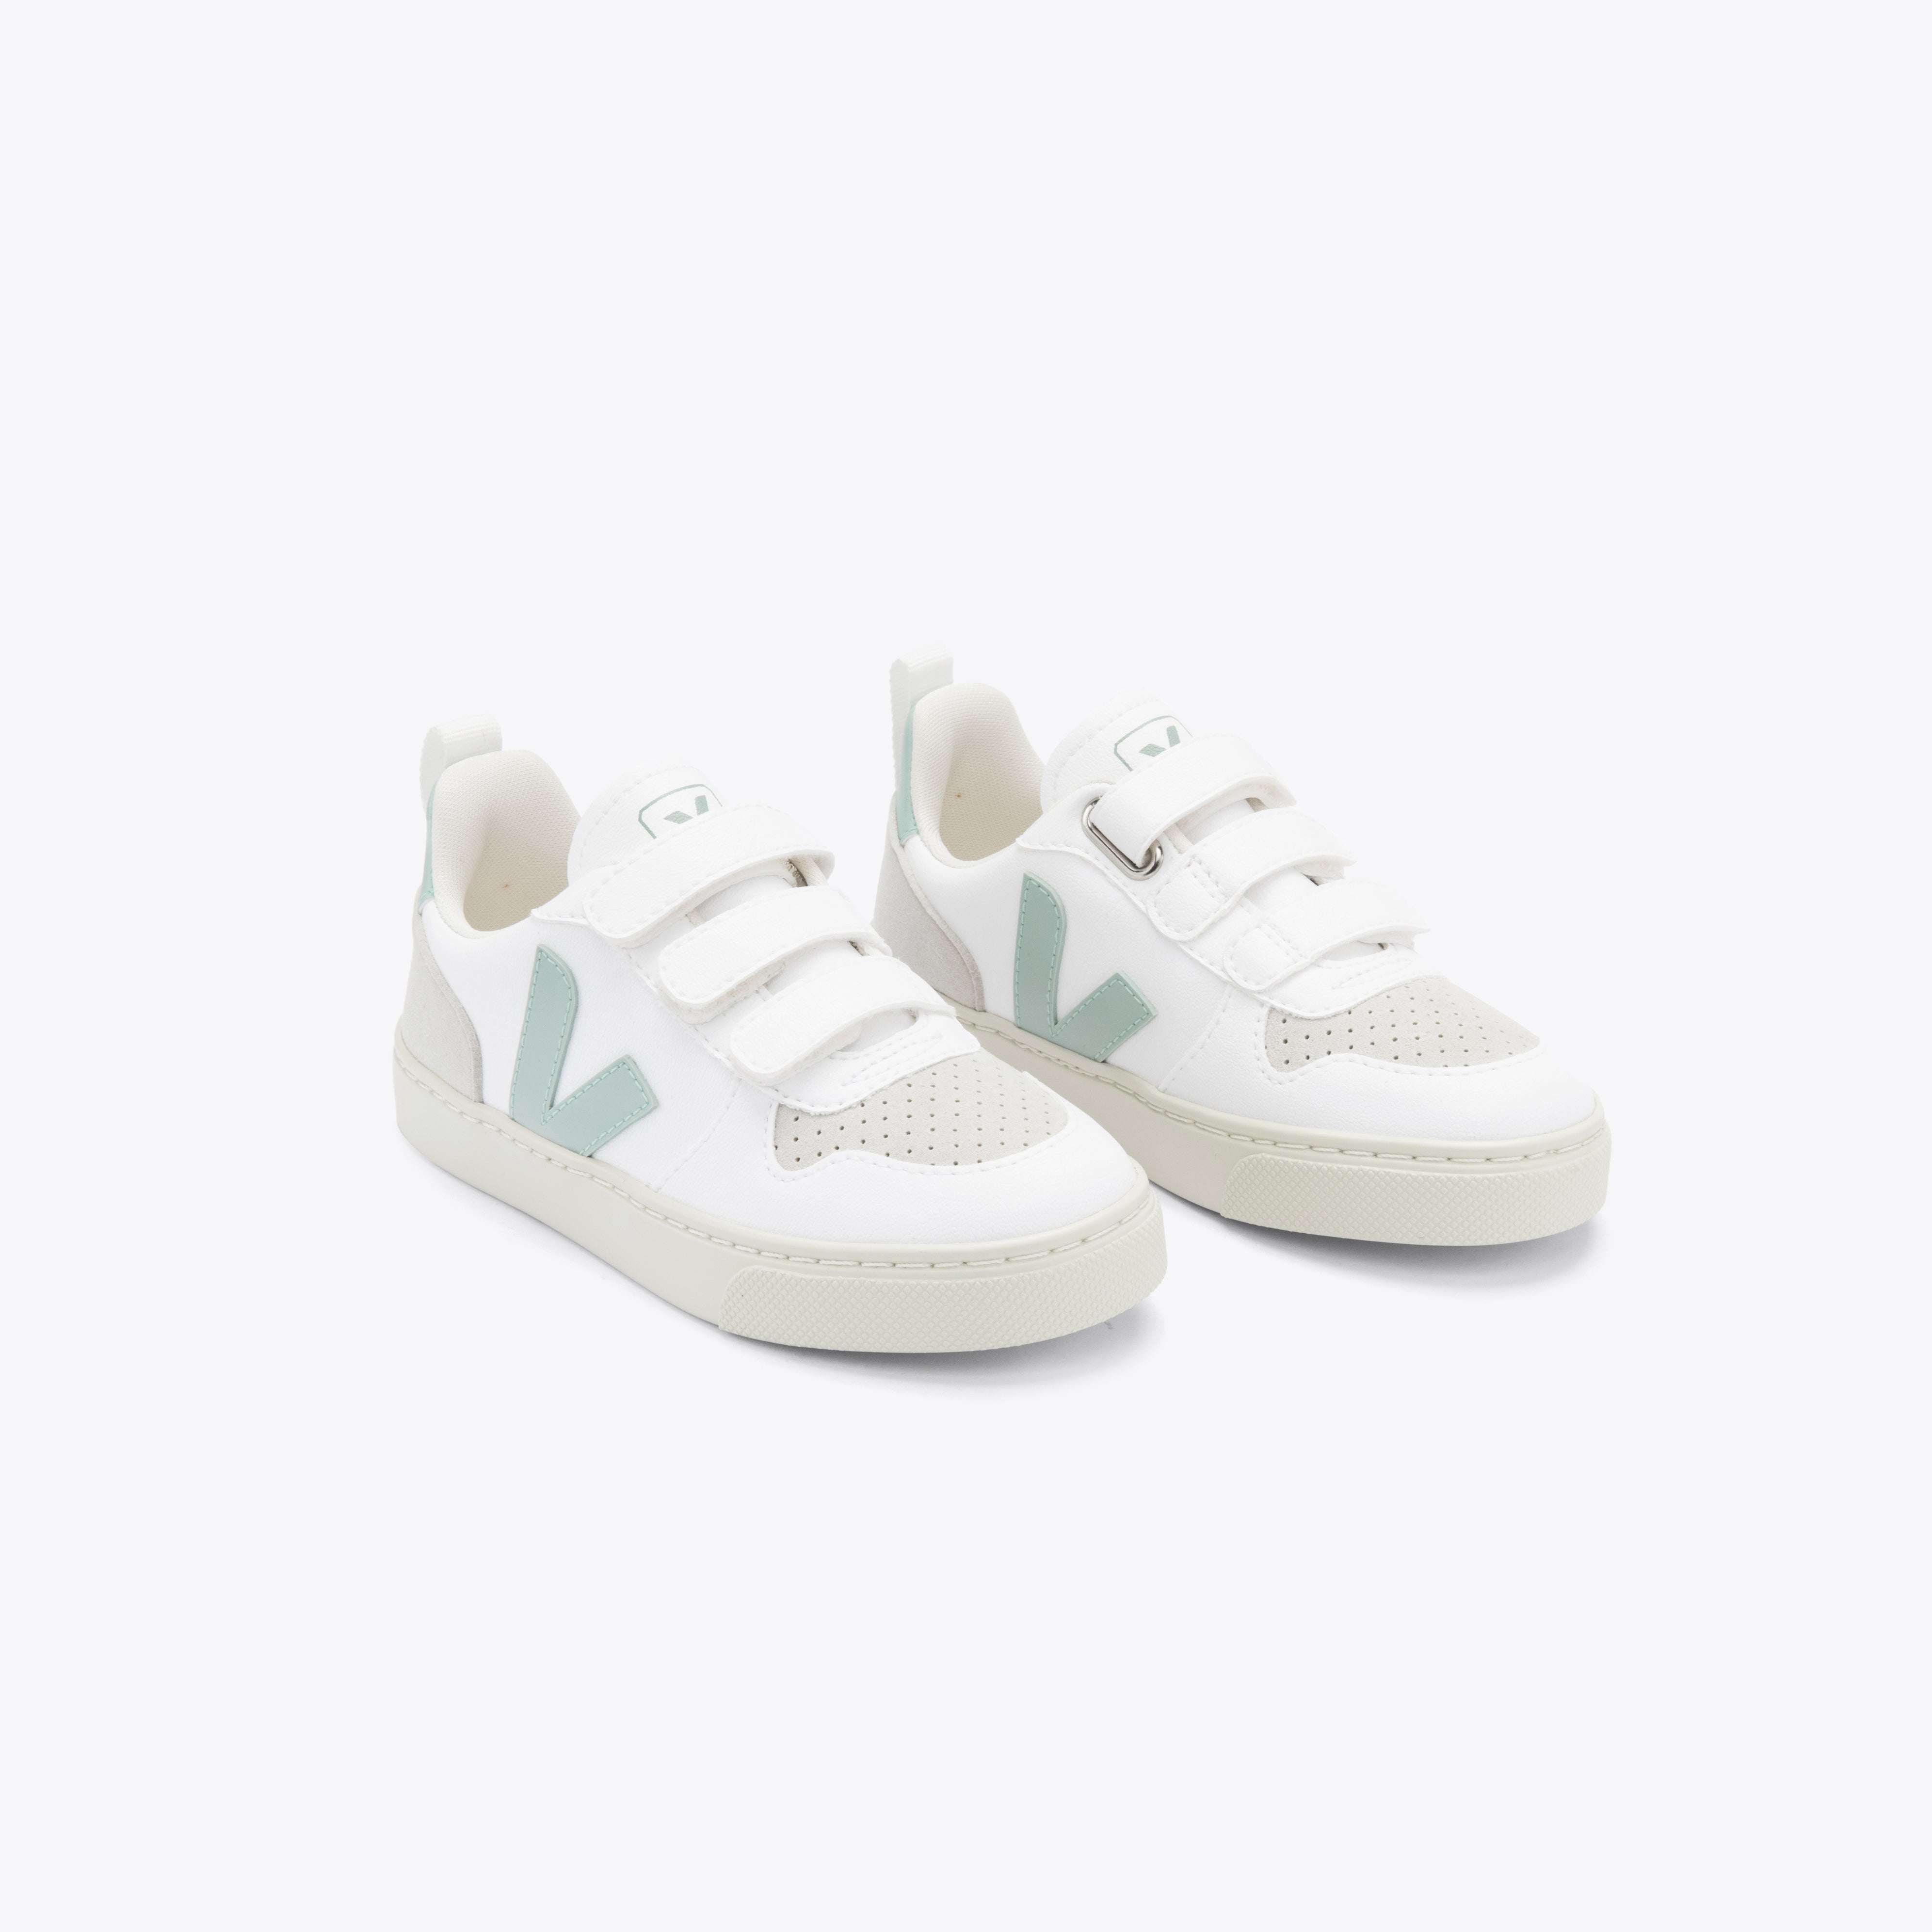 Boys & Girls White "V-10" Shoes